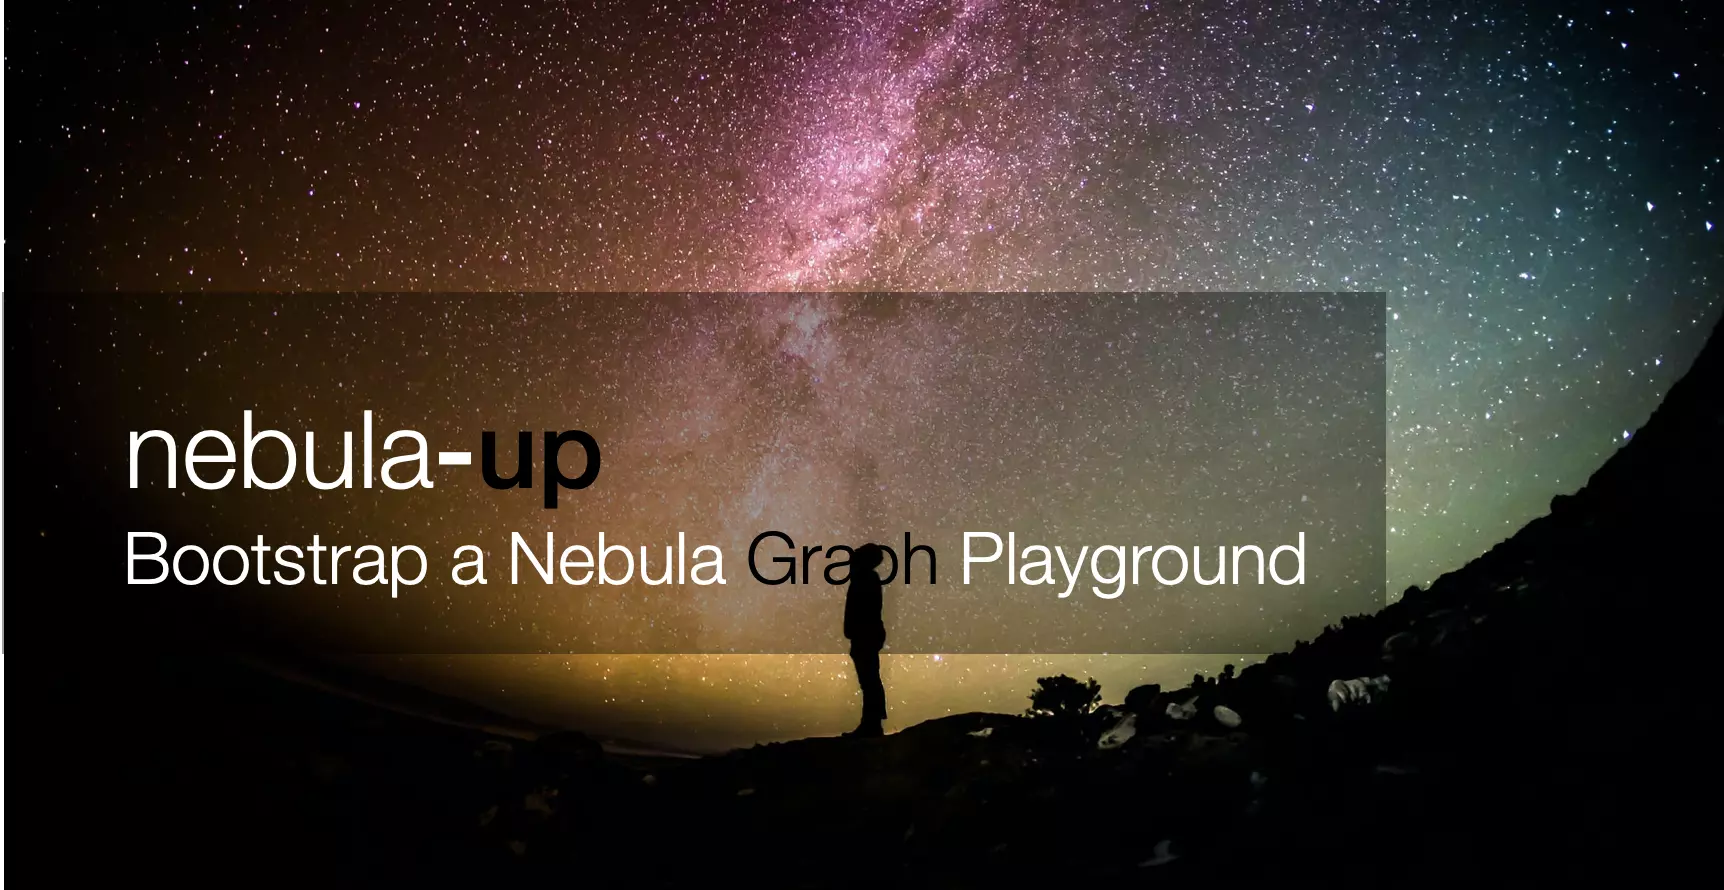 Nebula-up，一键拉起一个 Nebula 测试环境，包括 Nebula BR、Exchange、Algorithm、Dashboard、Studio